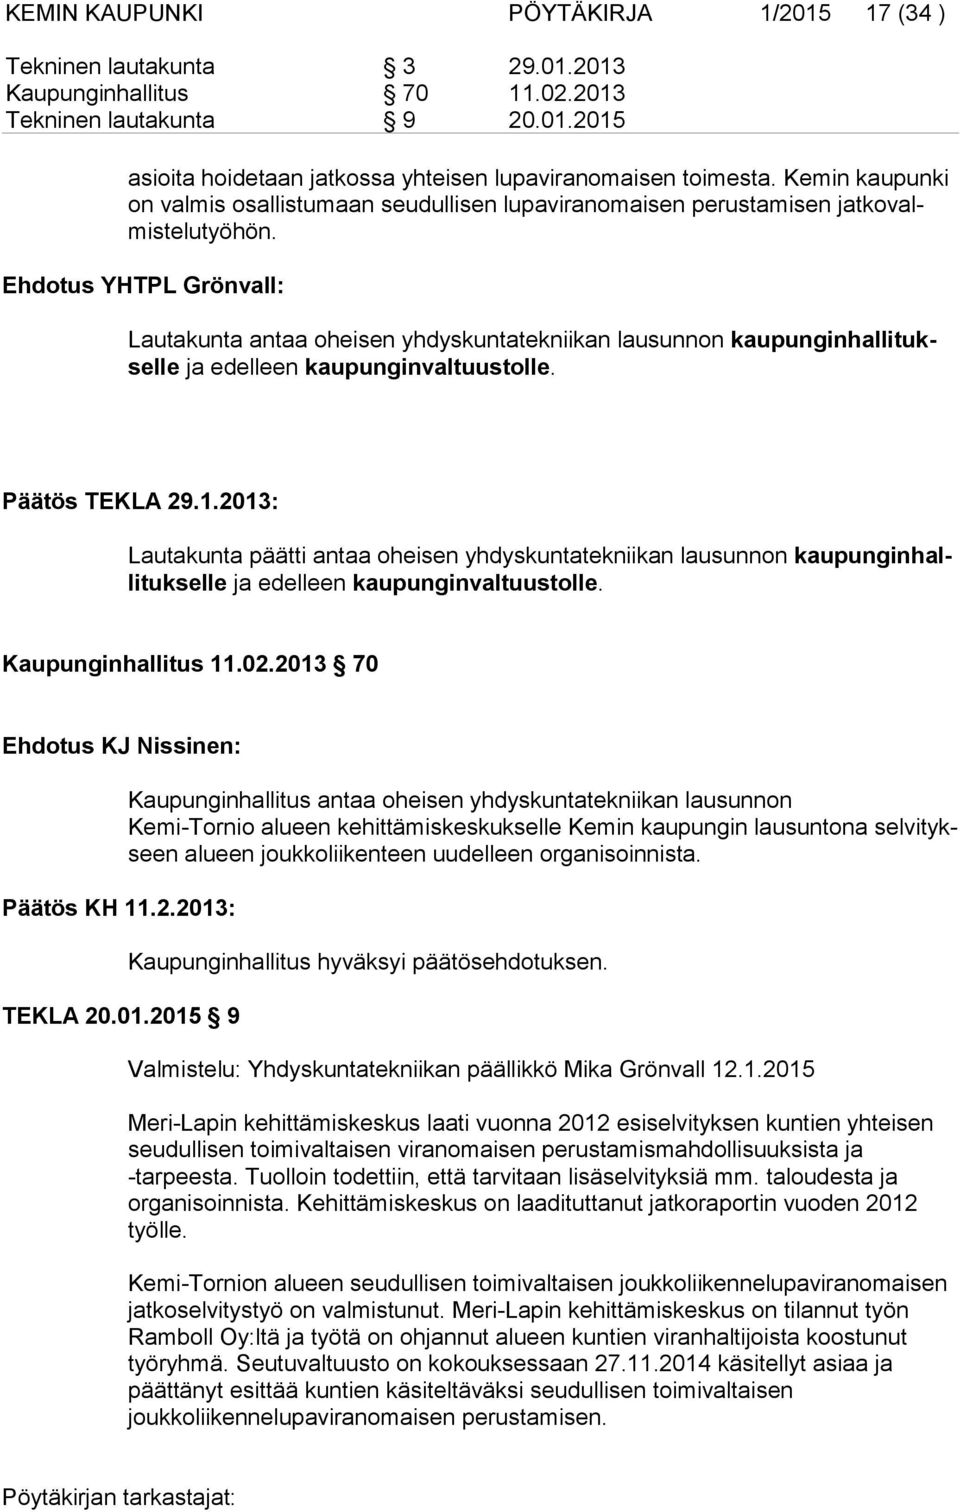 Ehdotus YHTPL Grönvall: Lautakunta antaa oheisen yhdyskuntatekniikan lausunnon kaupunginhallituksel le ja edelleen kaupunginvaltuustolle. Päätös TEKLA 29.1.